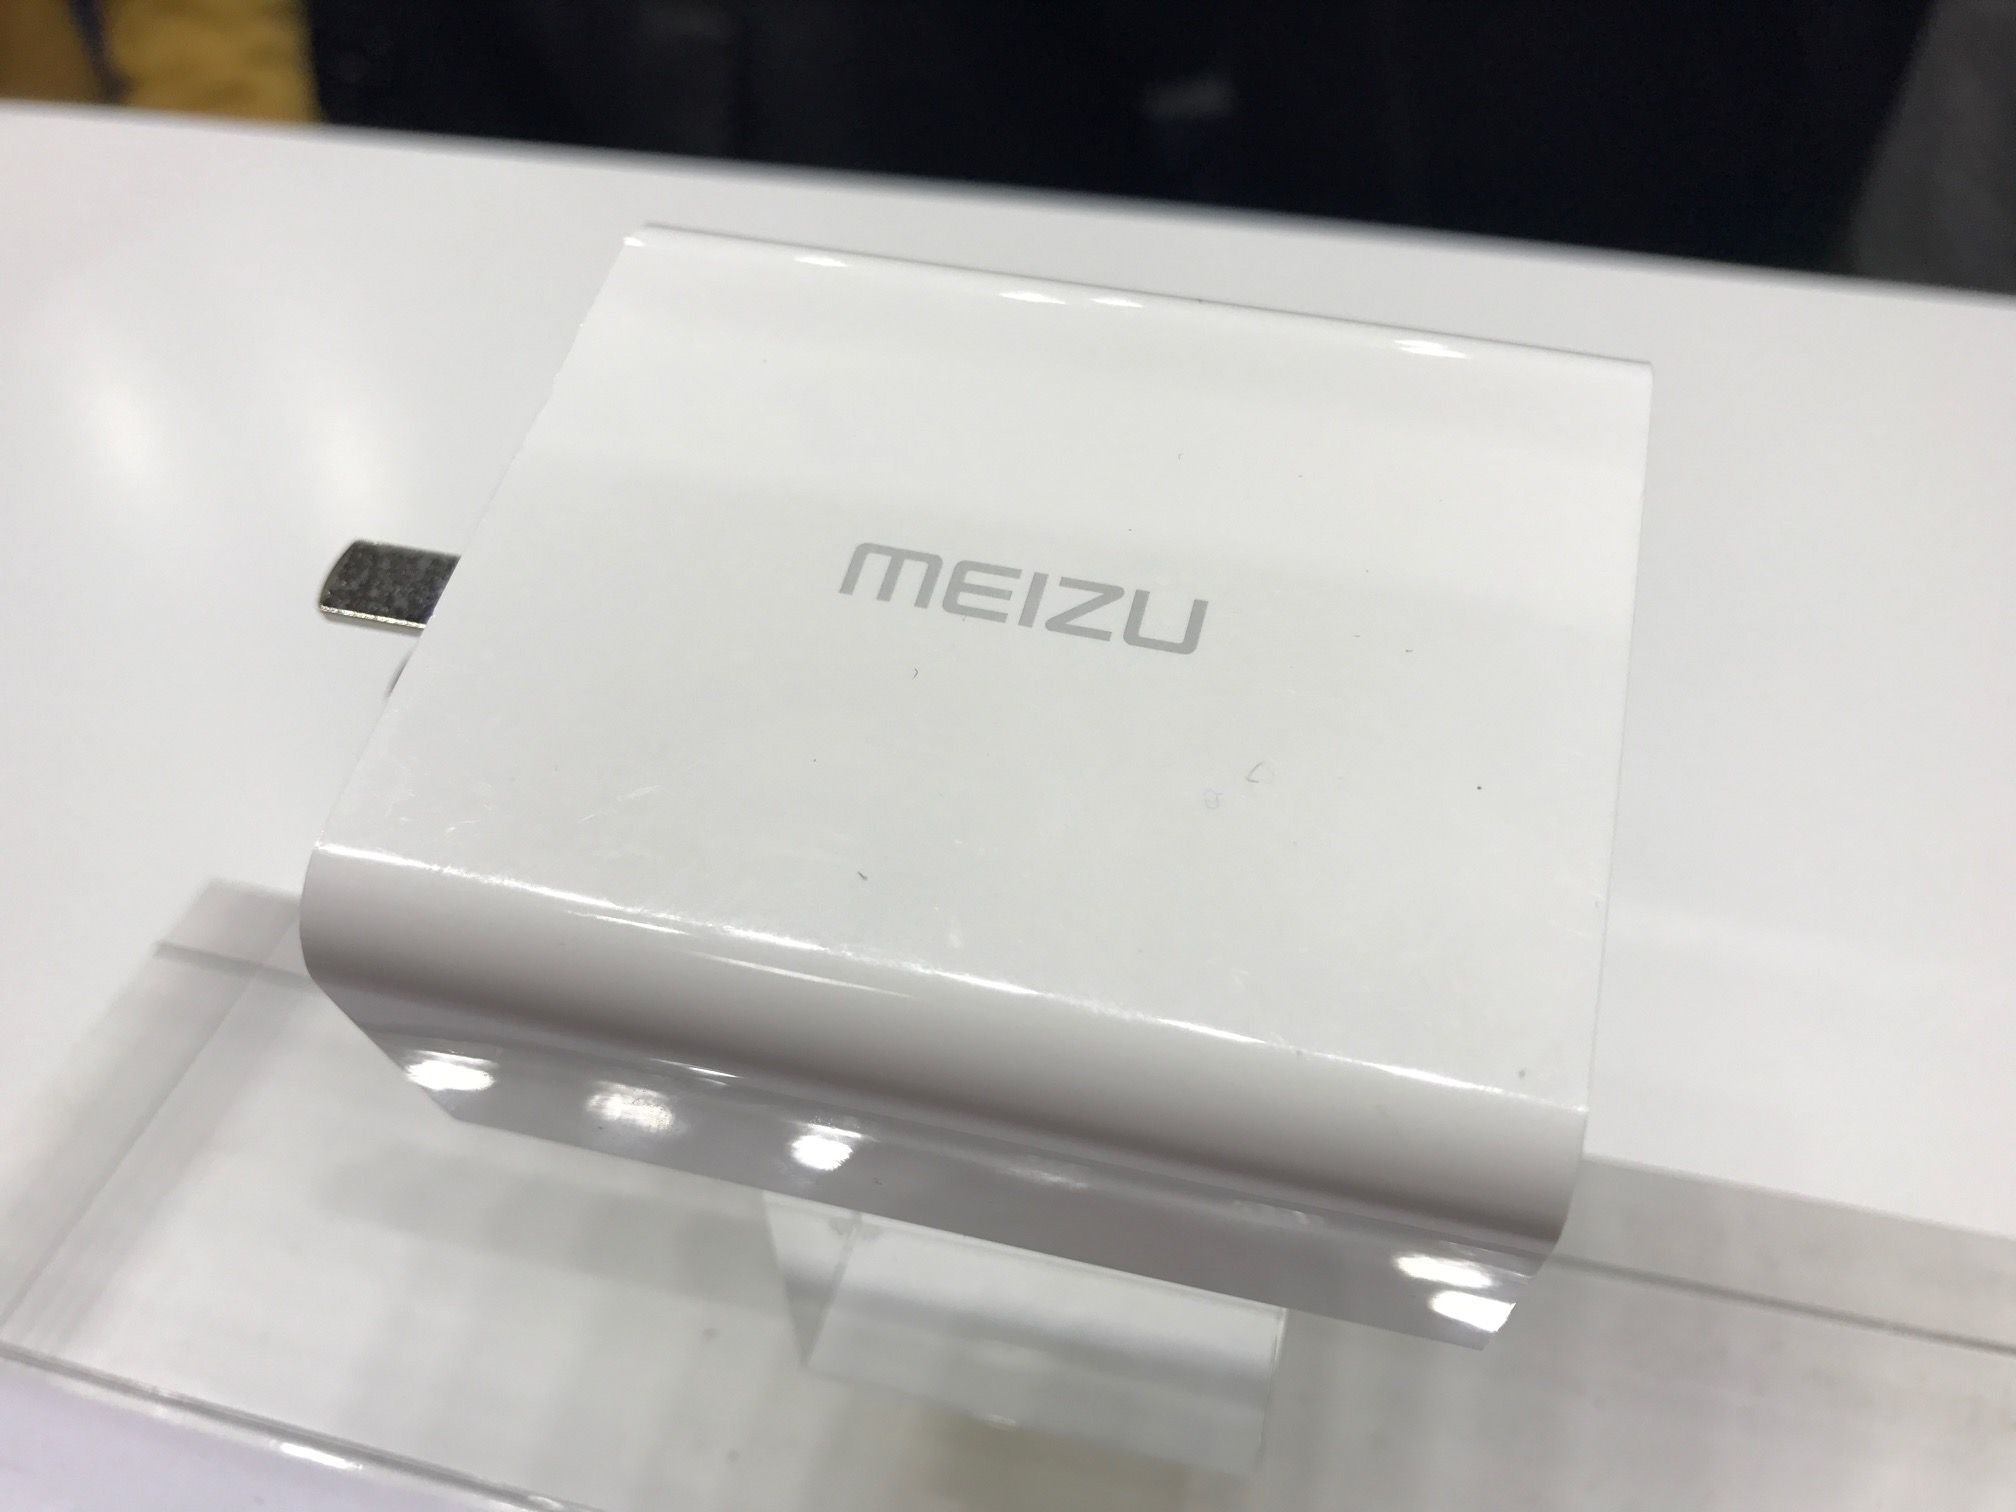 Meizu Super mCharge, nuevo sistema de carga rápida con 55 watts #MWC2017